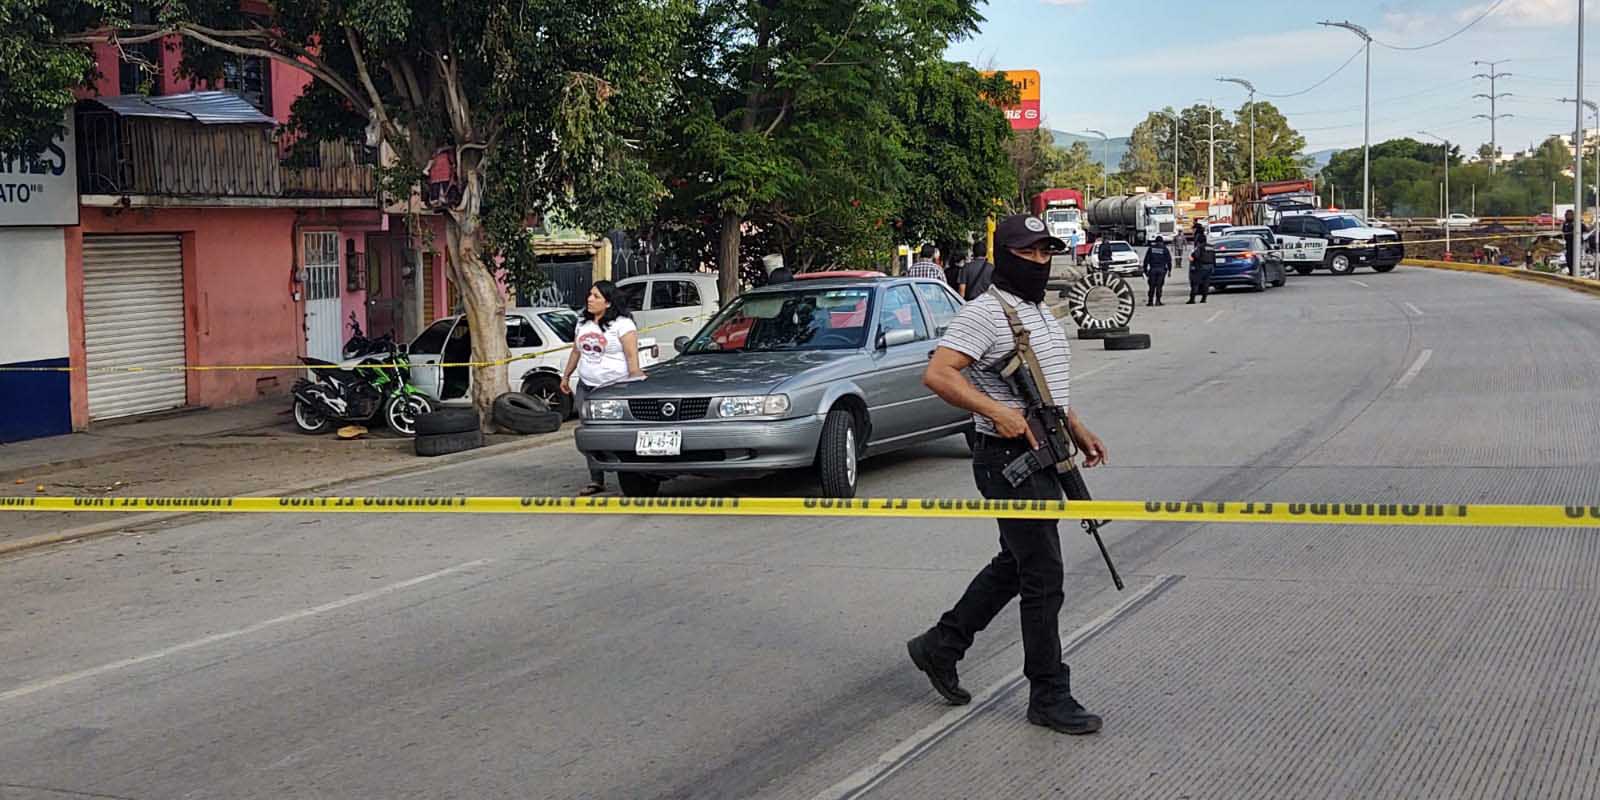 Lo matan a tiros | El Imparcial de Oaxaca